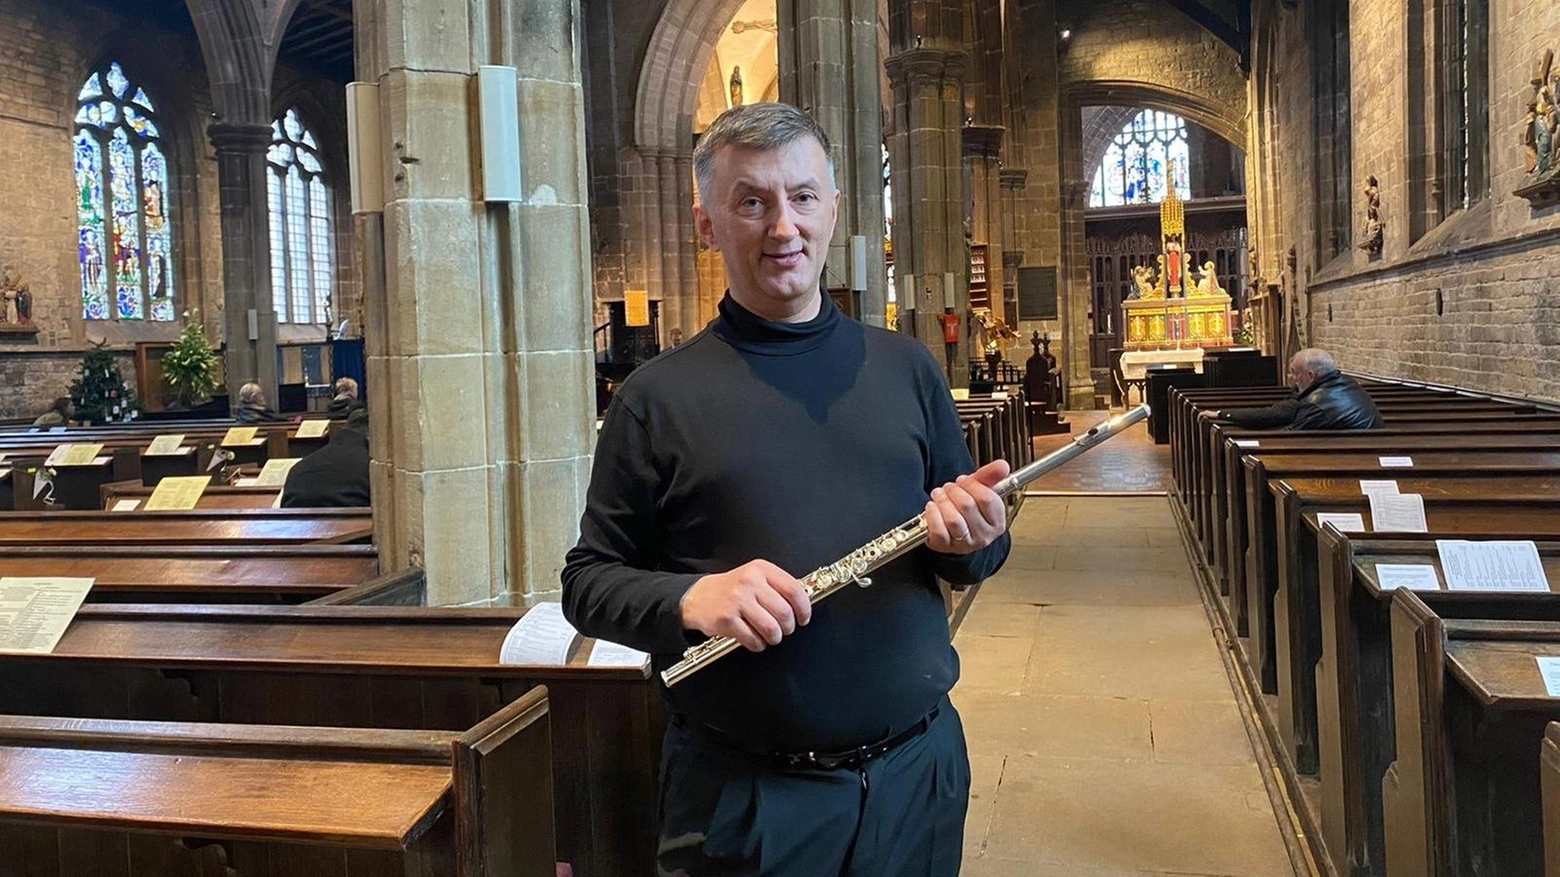 Il professor Marco Baragli, musicista e filosofo aretino, si esibisce in importanti eventi musicali in Inghilterra e intraprende il percorso per diventare sacerdote anglicano, dopo aver abbandonato l'insegnamento della religione cattolica.